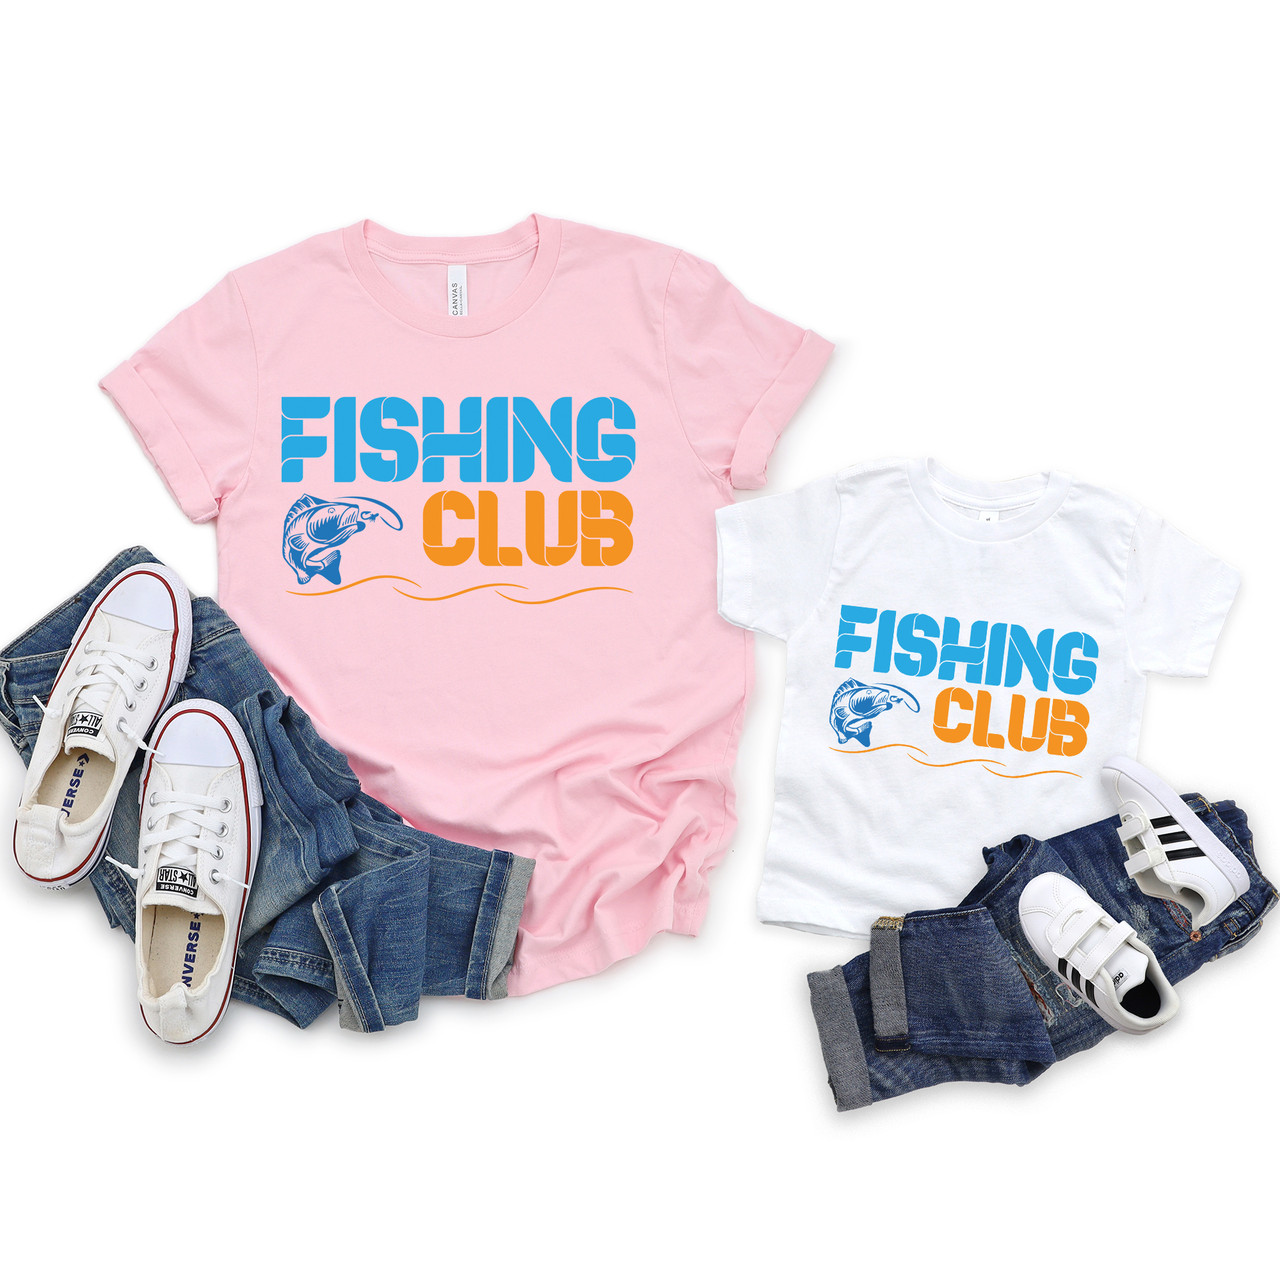 Fishing Club Sportfishing Fishing Lover Short Sleeve T-Shirt